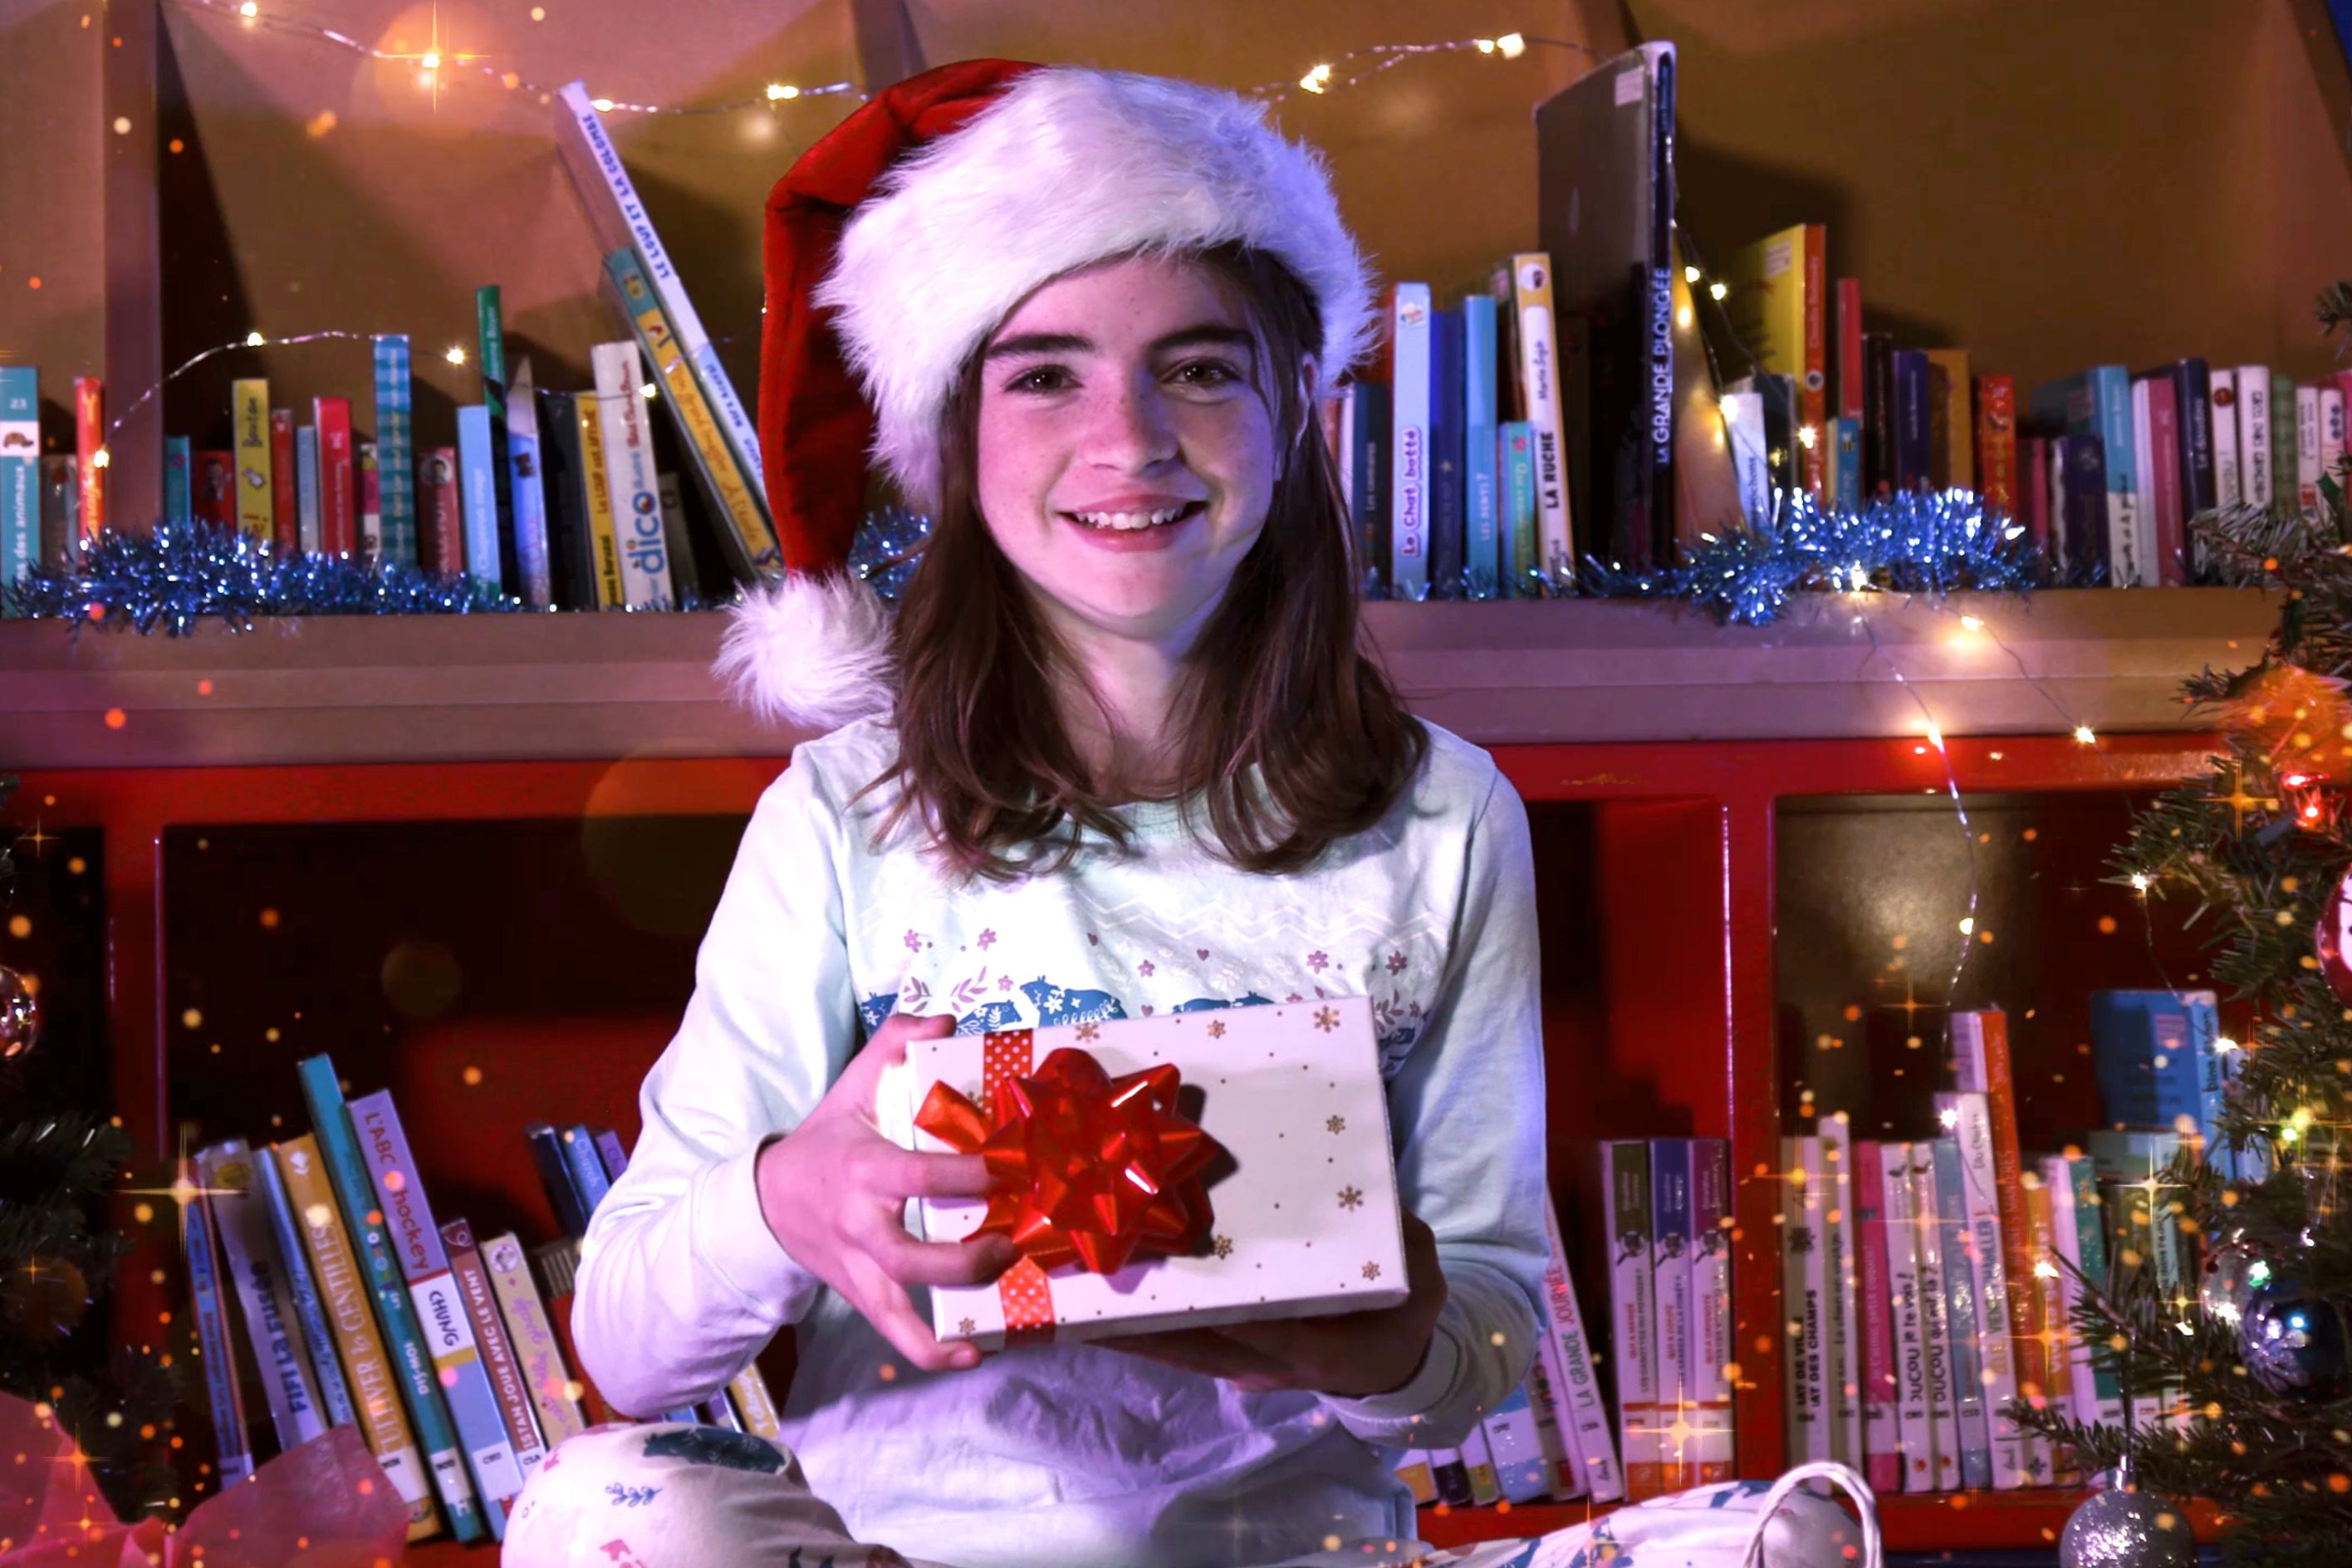 Petite fille avec un chapeau de Noël qui sourit en ouvrant une boîte cadeau entourée de livres et de cadeaux au pied du sapin.